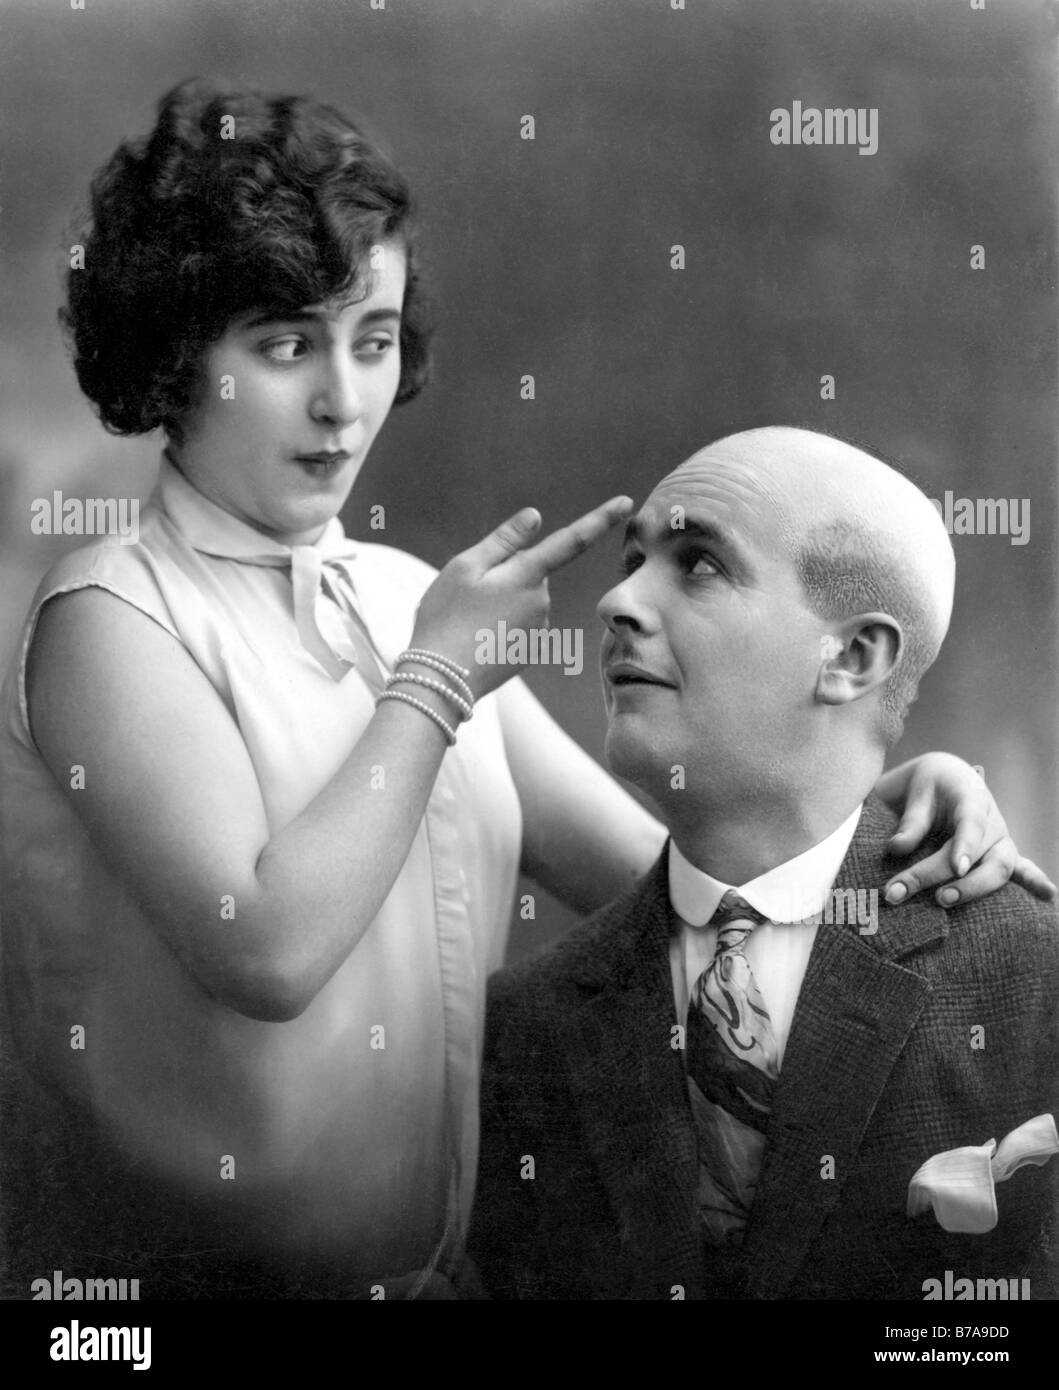 Foto storiche, donna e uomo calvo, Warum hat Egon keine Haare?, 'Perché non Egon hanno i capelli?" ca. 1920 Foto Stock